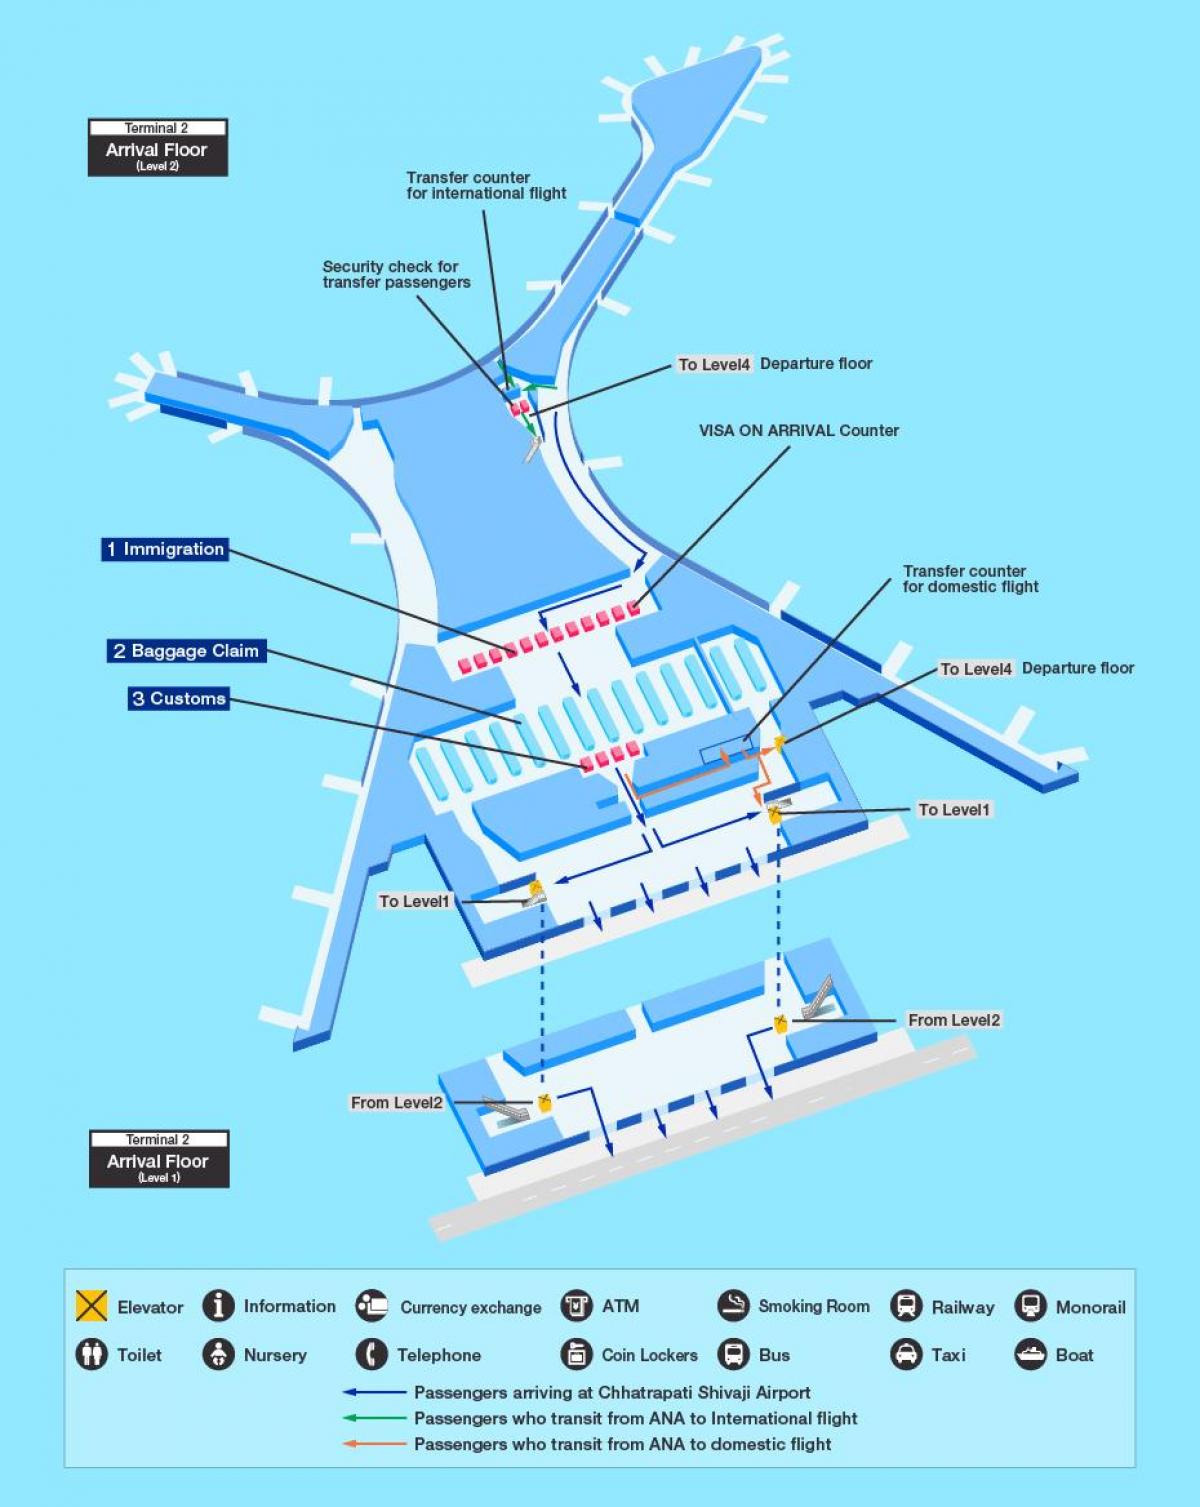 नक्शा मुंबई के अंतरराष्ट्रीय हवाई अड्डे